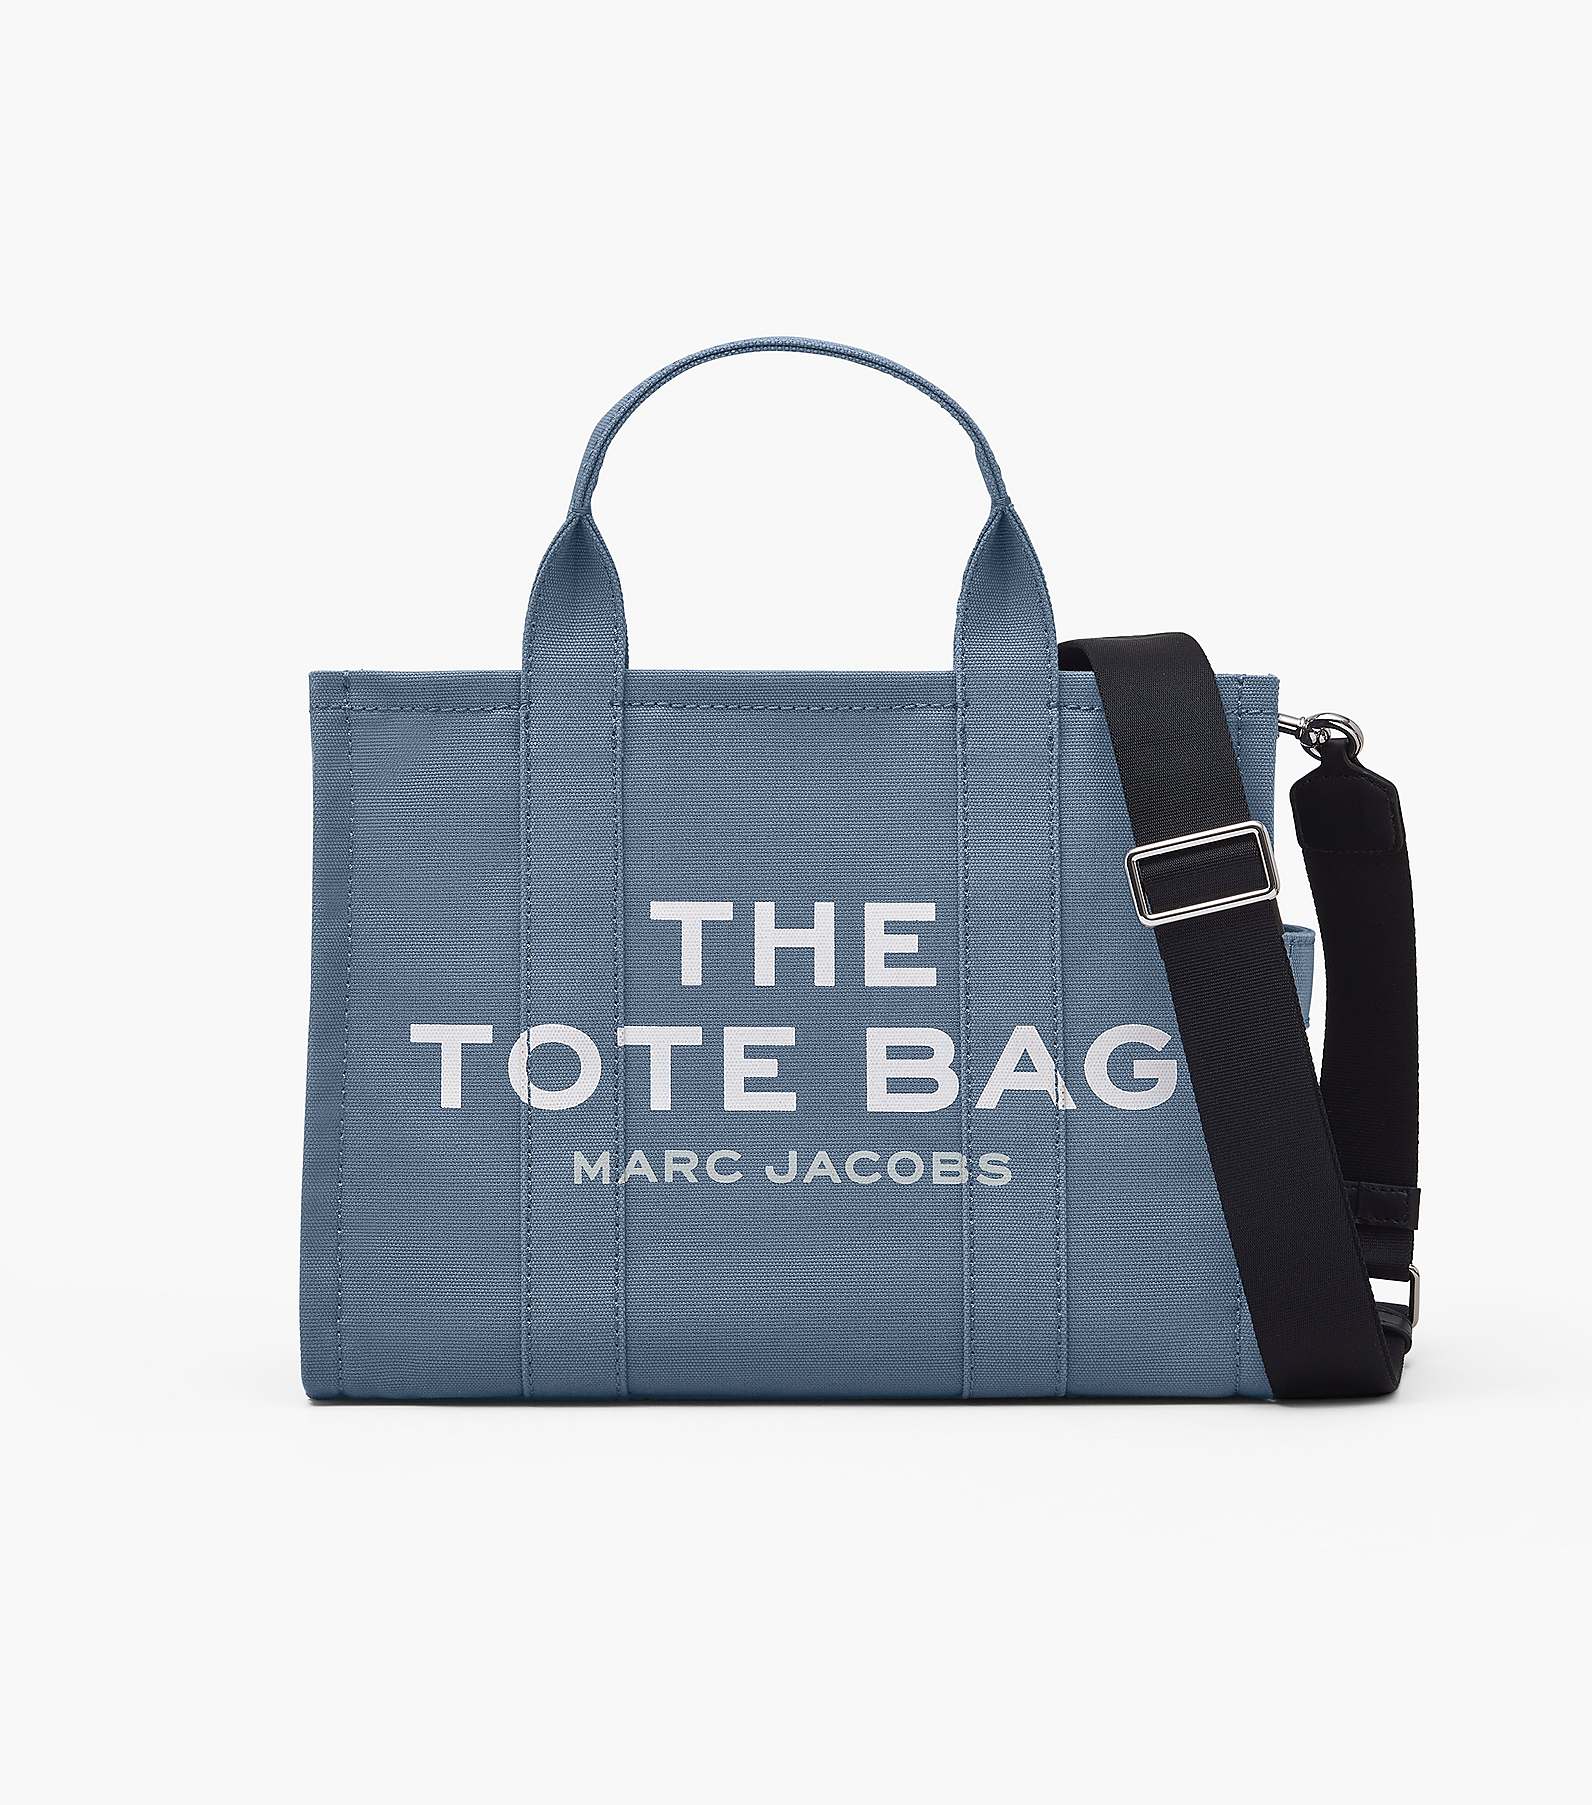 The Medium Tote Bag(The Tote Bag)